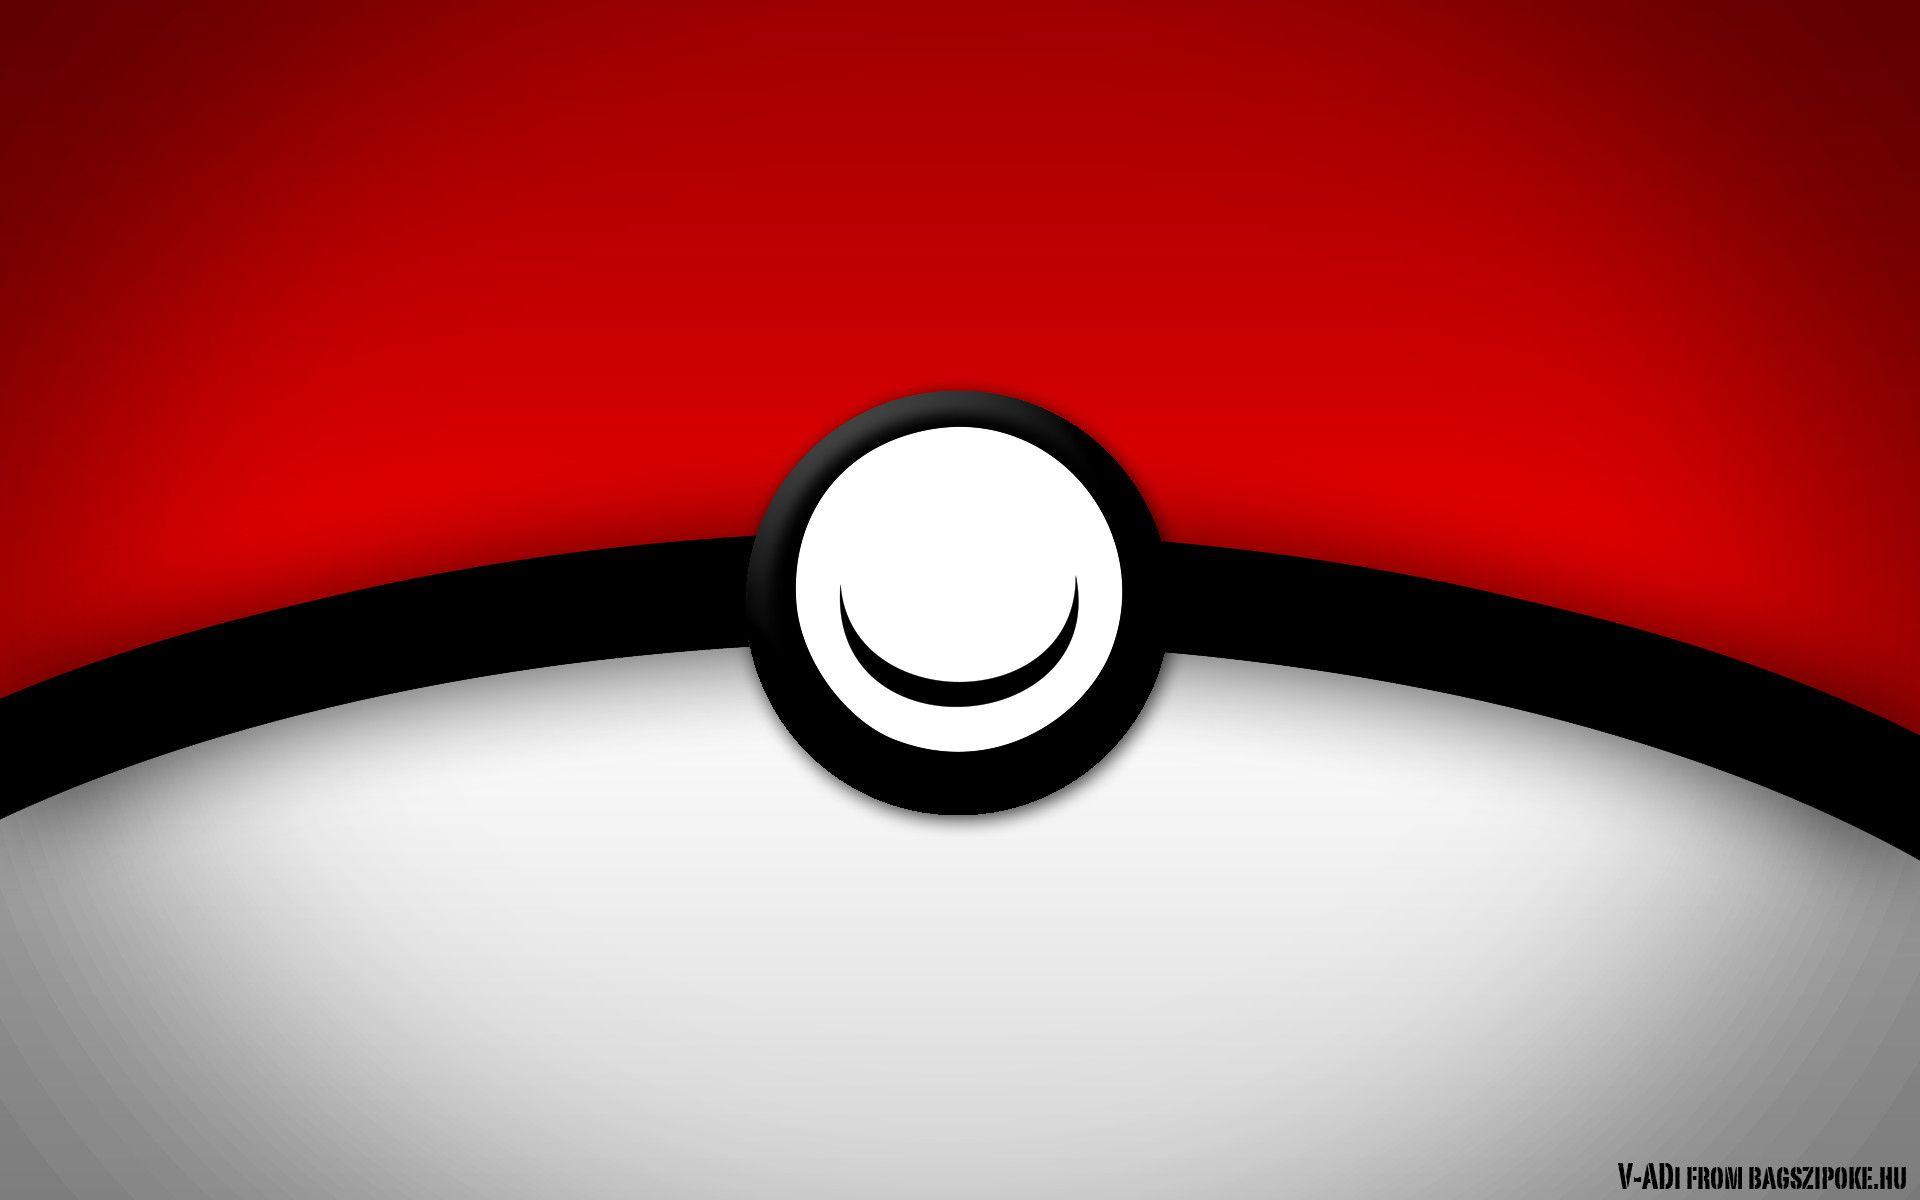 Wallpaper ID: 335517 / Anime Pokémon Phone Wallpaper, Raichu (Pokémon),  Pokeball, 1440x2560 free download